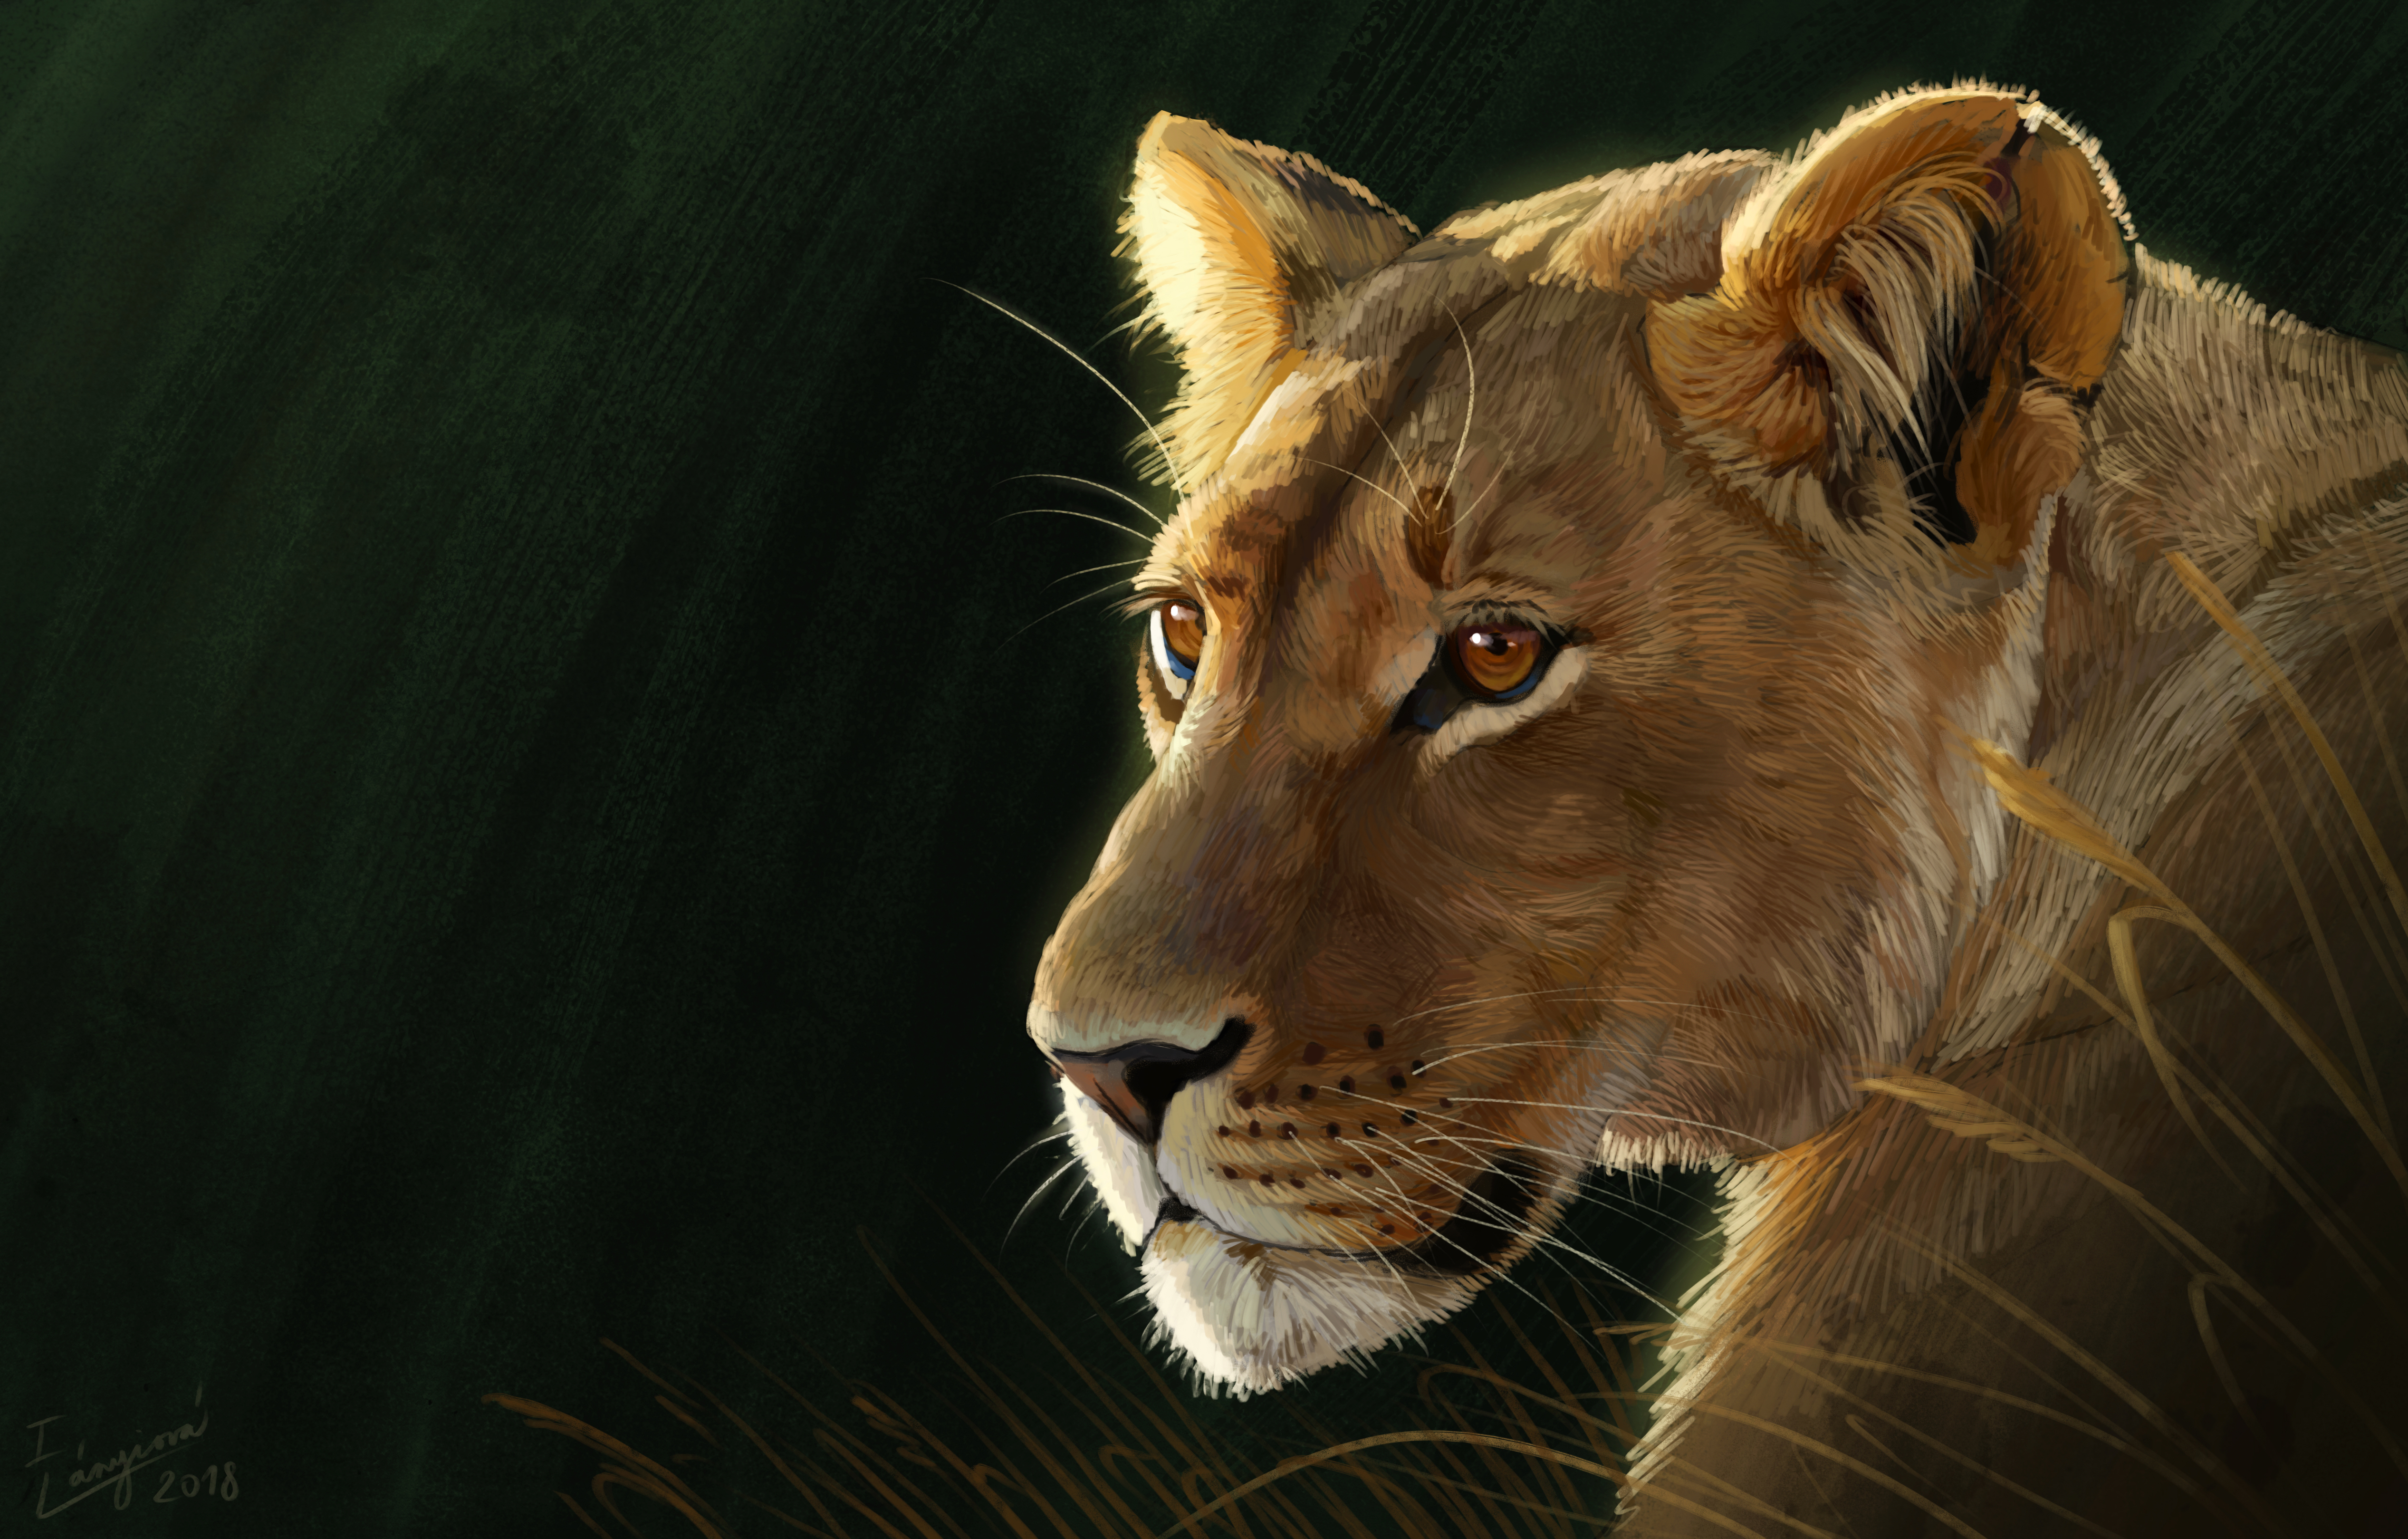 8k Lioness Background